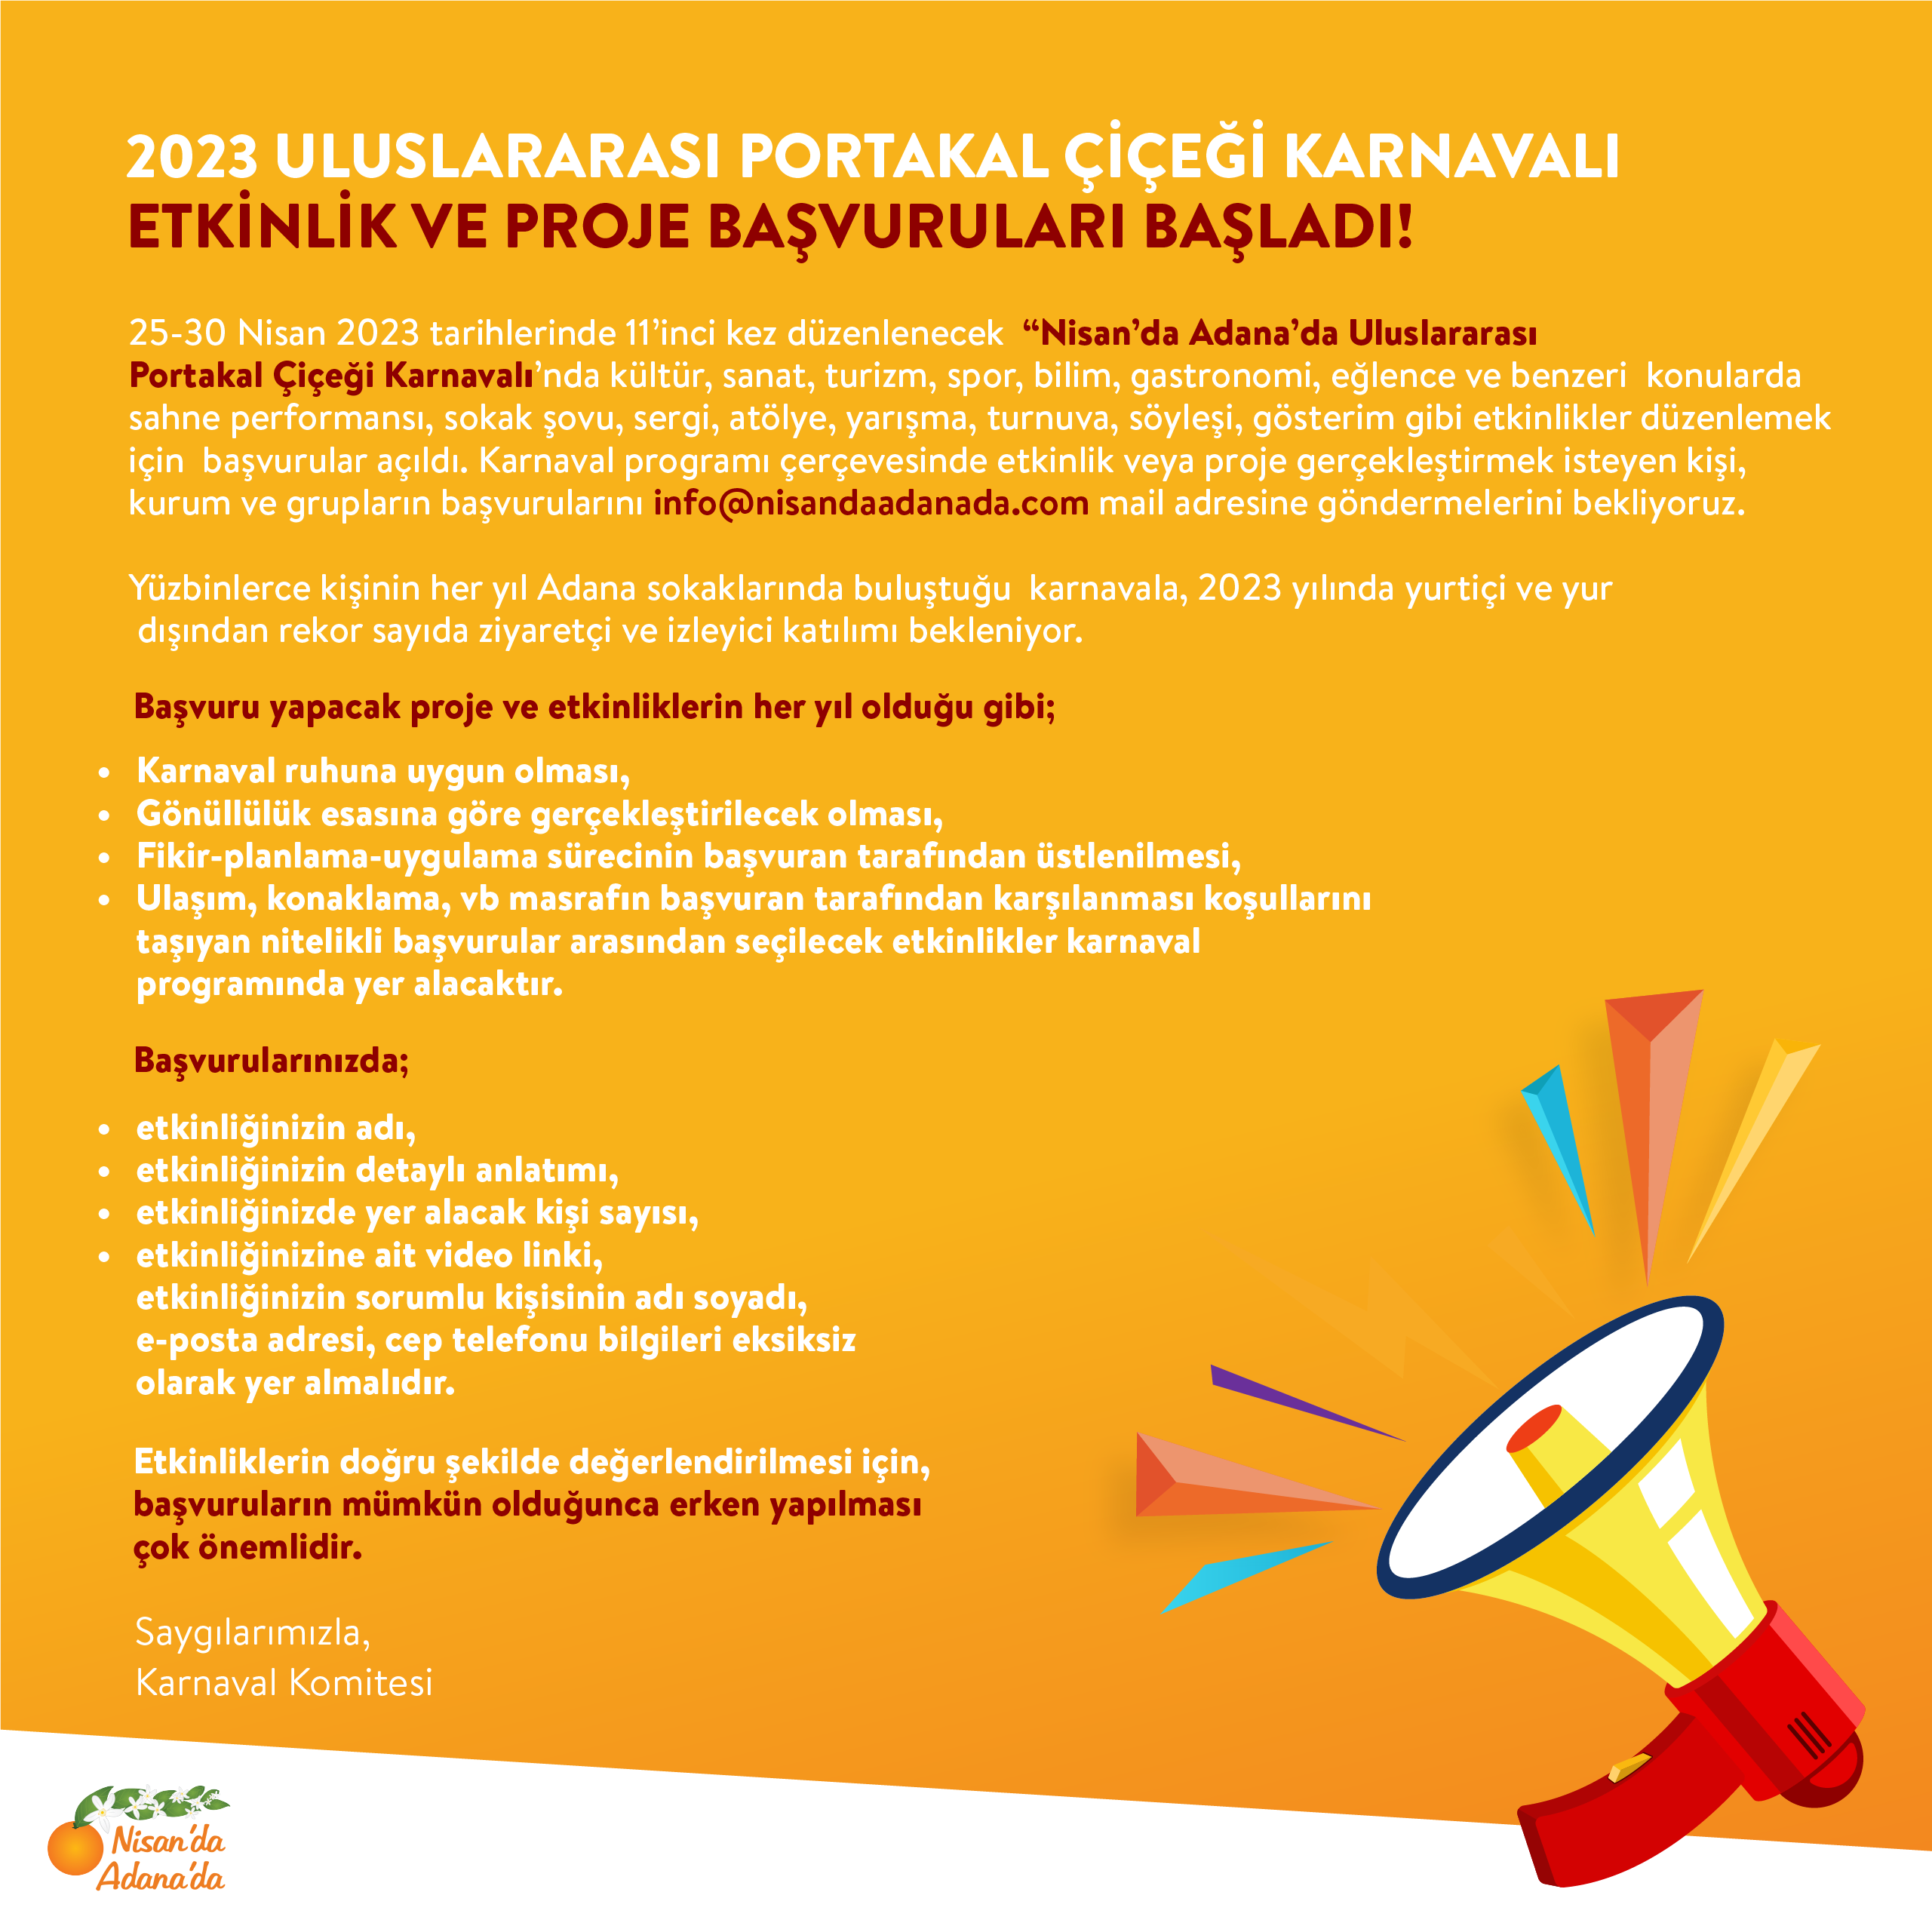 2023 Portakal Uluslararası Portakal Çiçeği Karnavalı Etkinlik ve Proje Başvurları Başladı